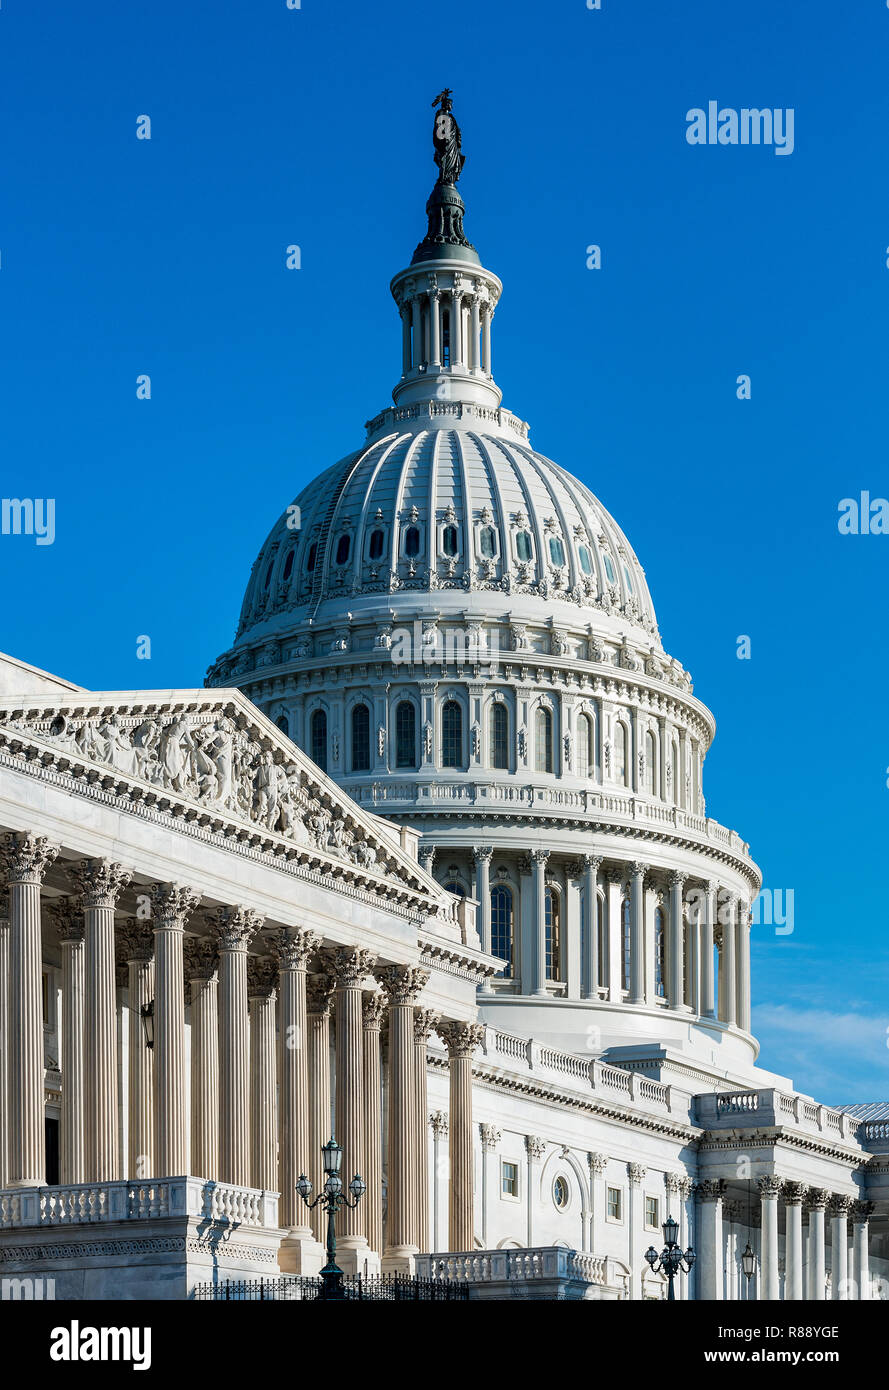 United States Capitol Building, Washington DC, USA. Stock Photo